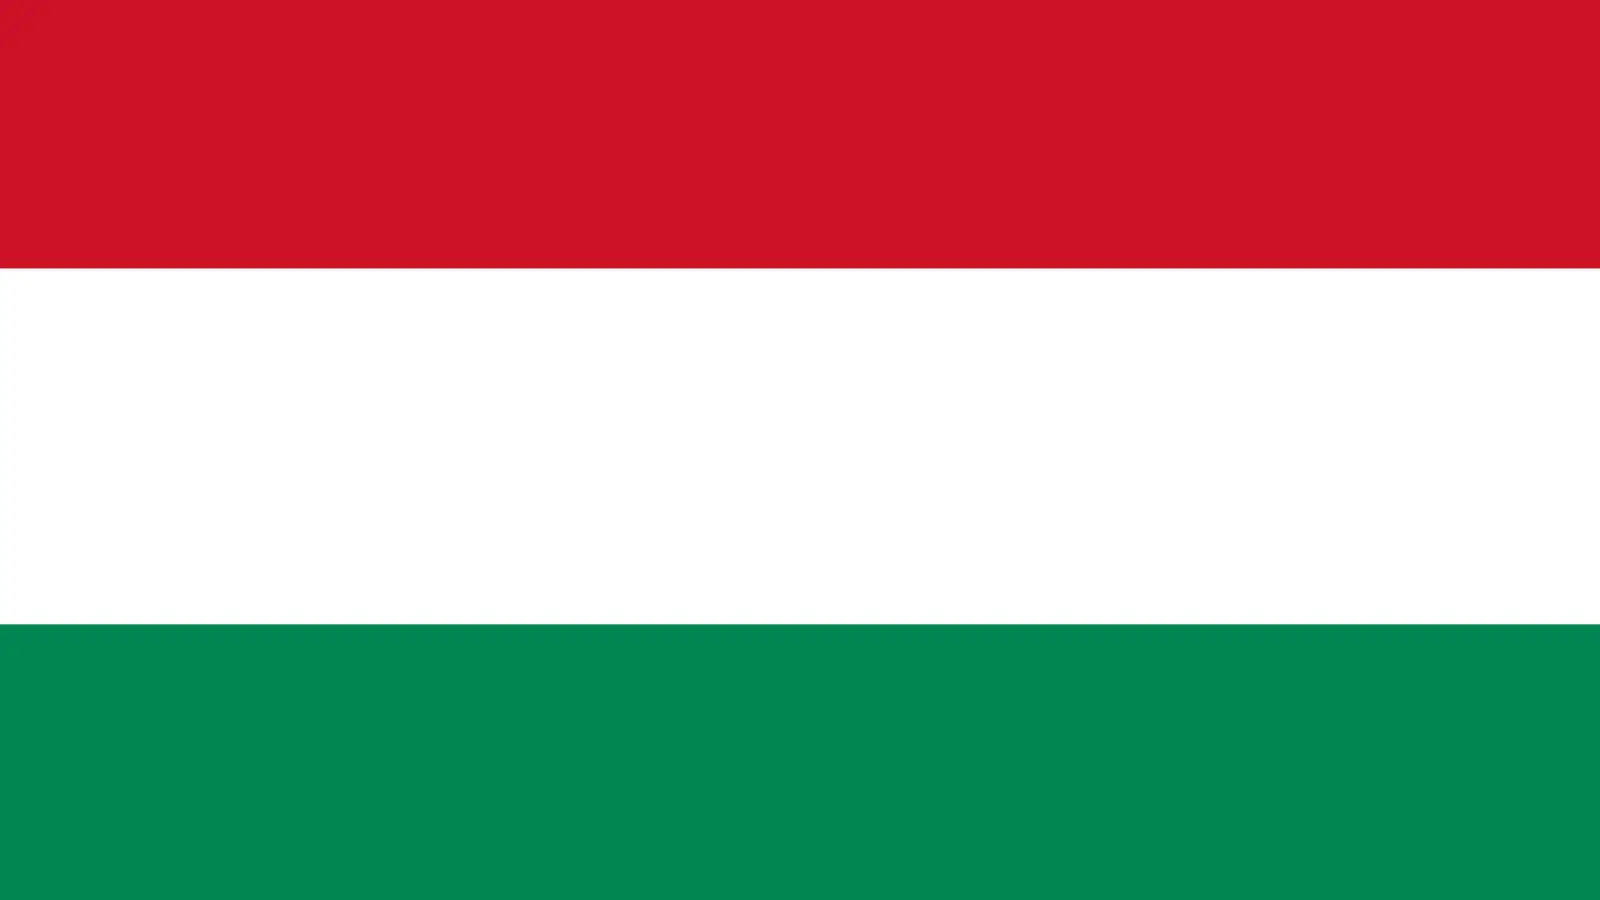 Ungaria se Opune unei Importante Decizii Ceruta in cadrul UE